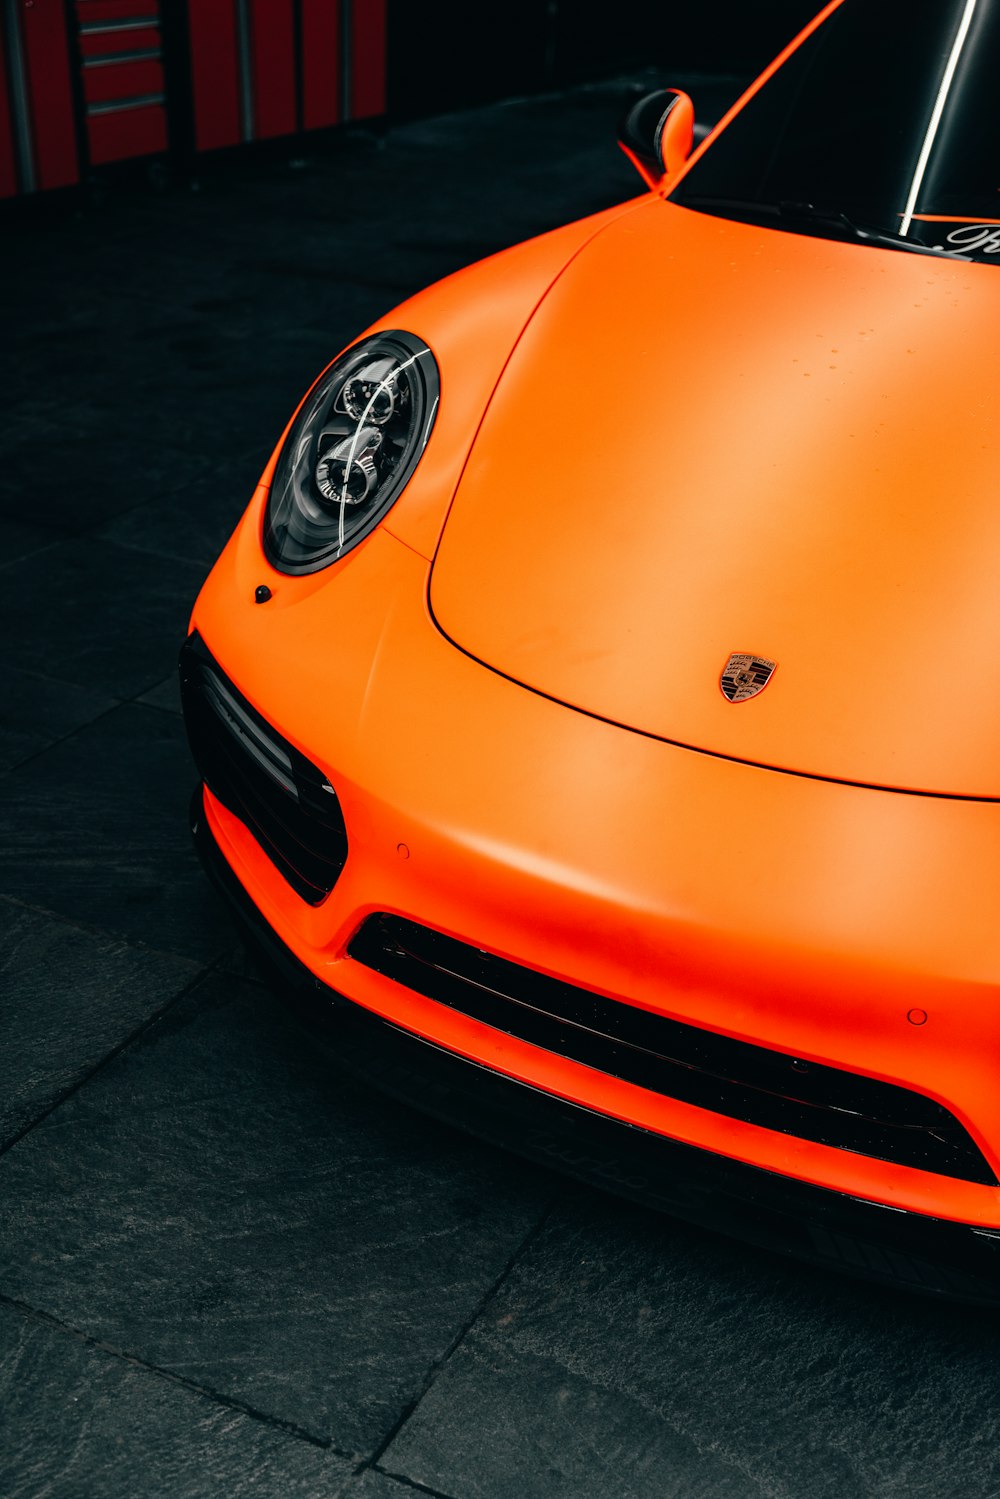 Porsche 911 laranja estacionado em pavimento preto